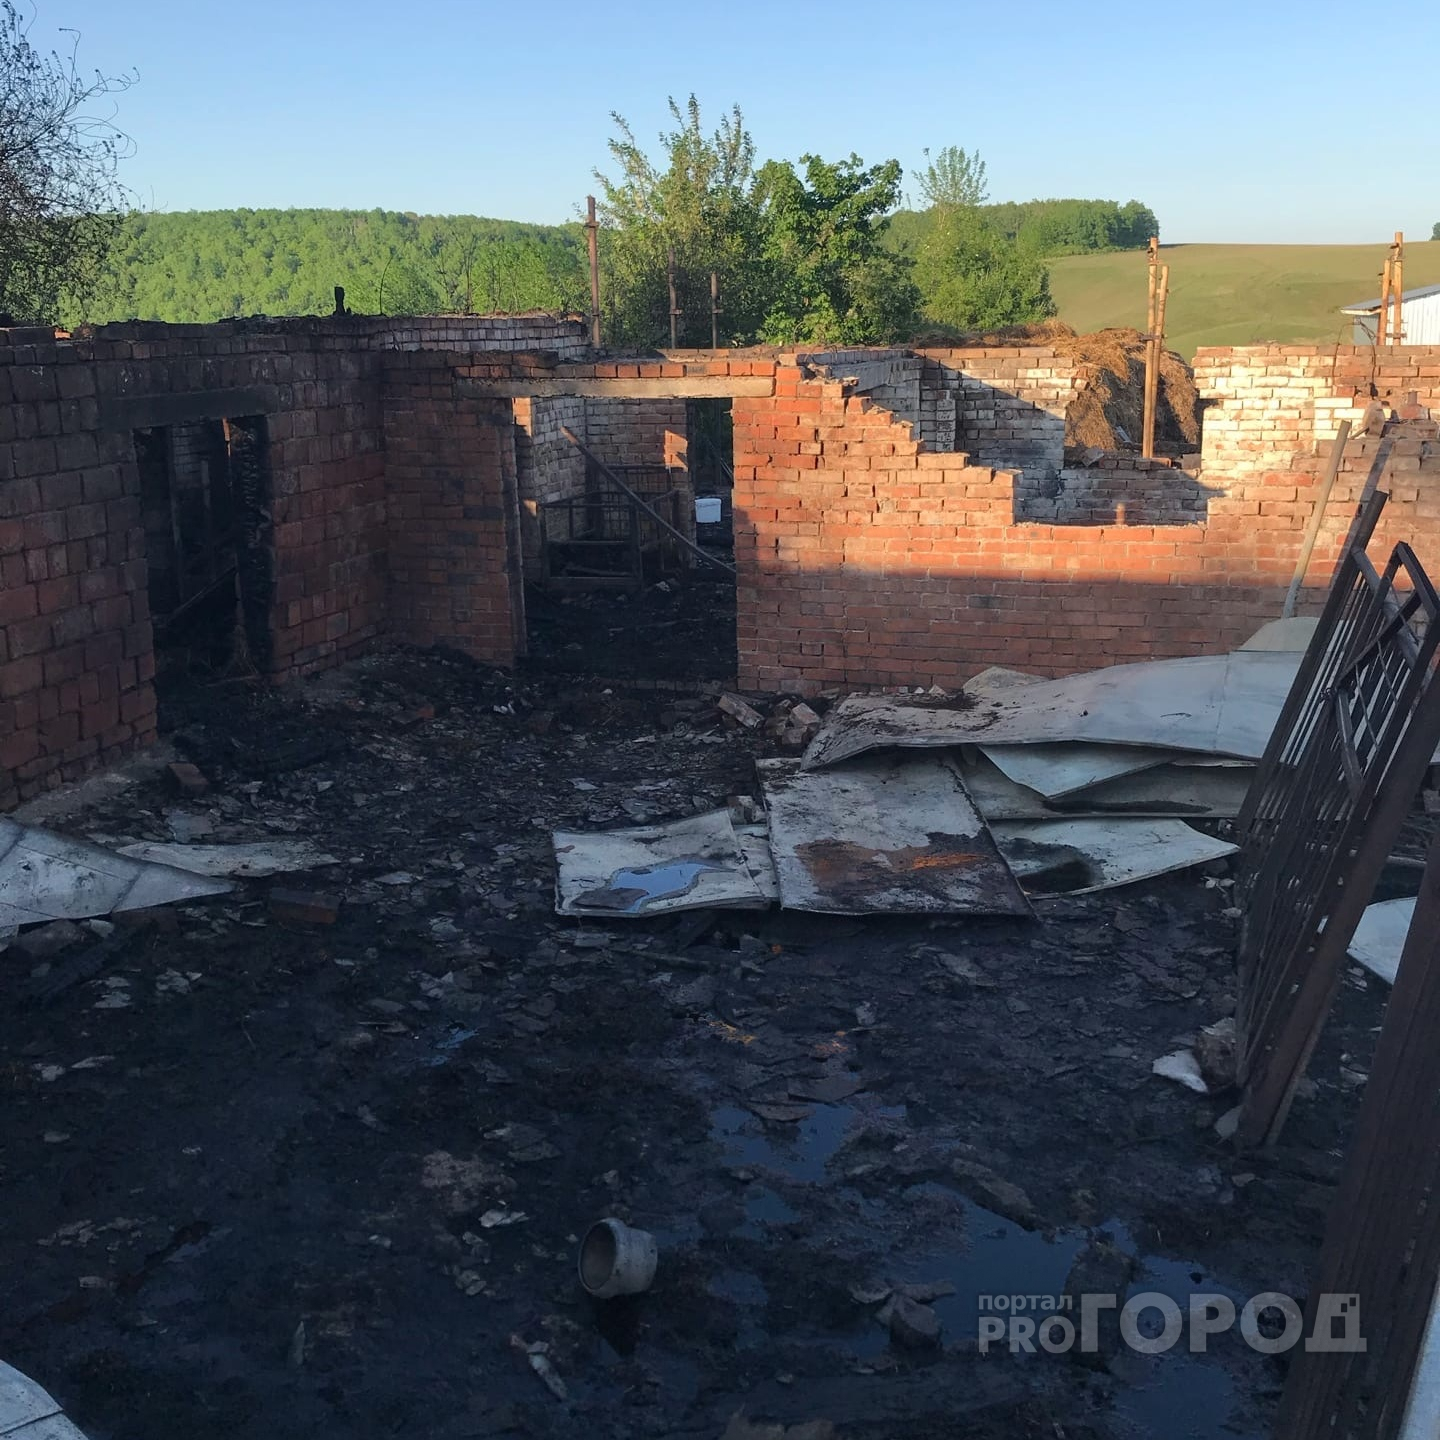 Семья с тремя детьми оказалась на улице после пожара: погорельцы Чебоксарского района просят о помощи